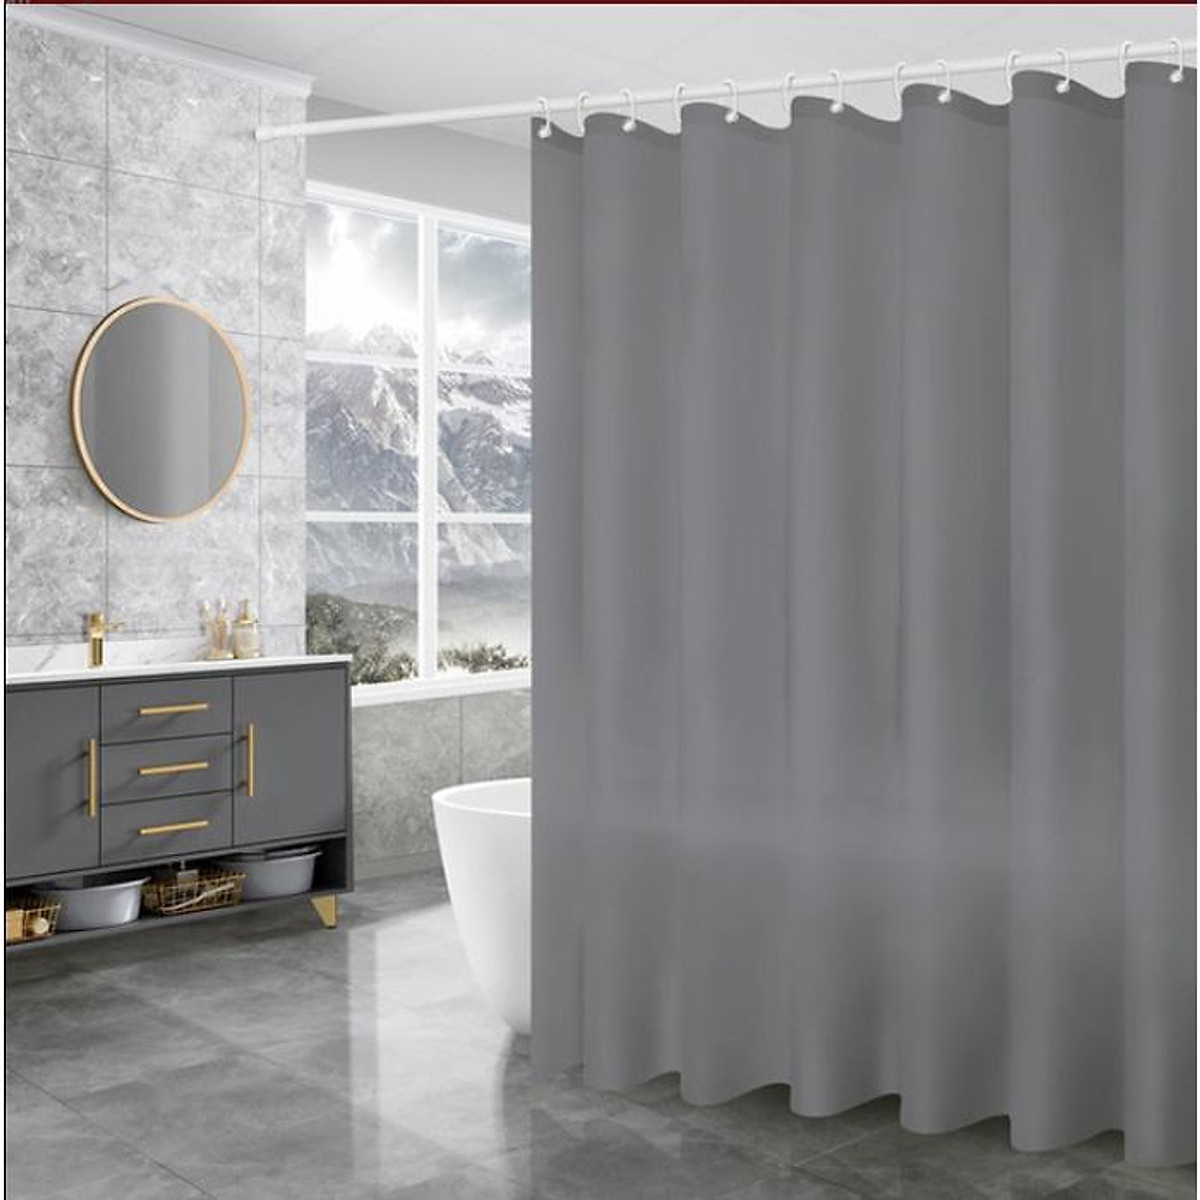 Mau xám hiện đại và thanh lịch sẽ giúp tạo ra một không gian phòng tắm sang trọng. Với chiếc rèm cửa nhà tắm màu xám, bạn có thể tạo ra một thiết kế phòng tắm đầy tinh tế với màu sắc thật thoải mái và ấn tượng. Hãy truy cập ngay để biết thêm chi tiết.